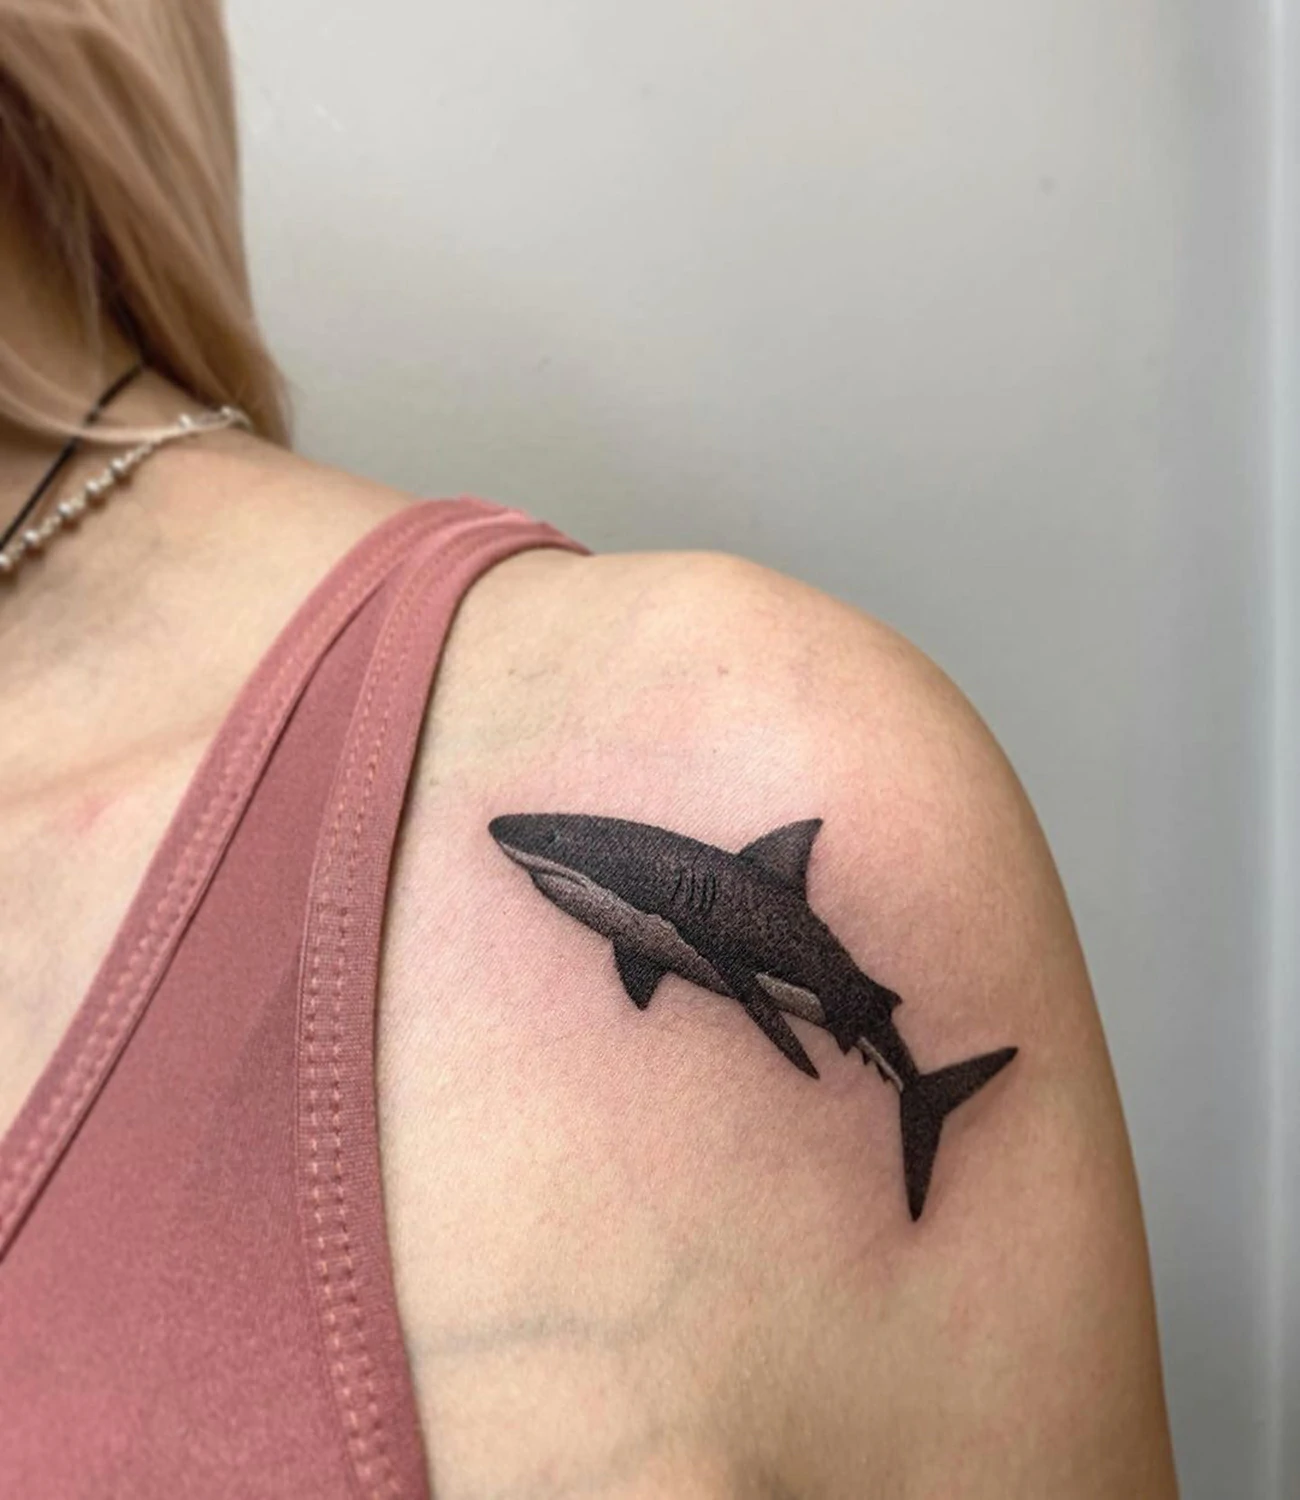 Great White Shark Tattoo